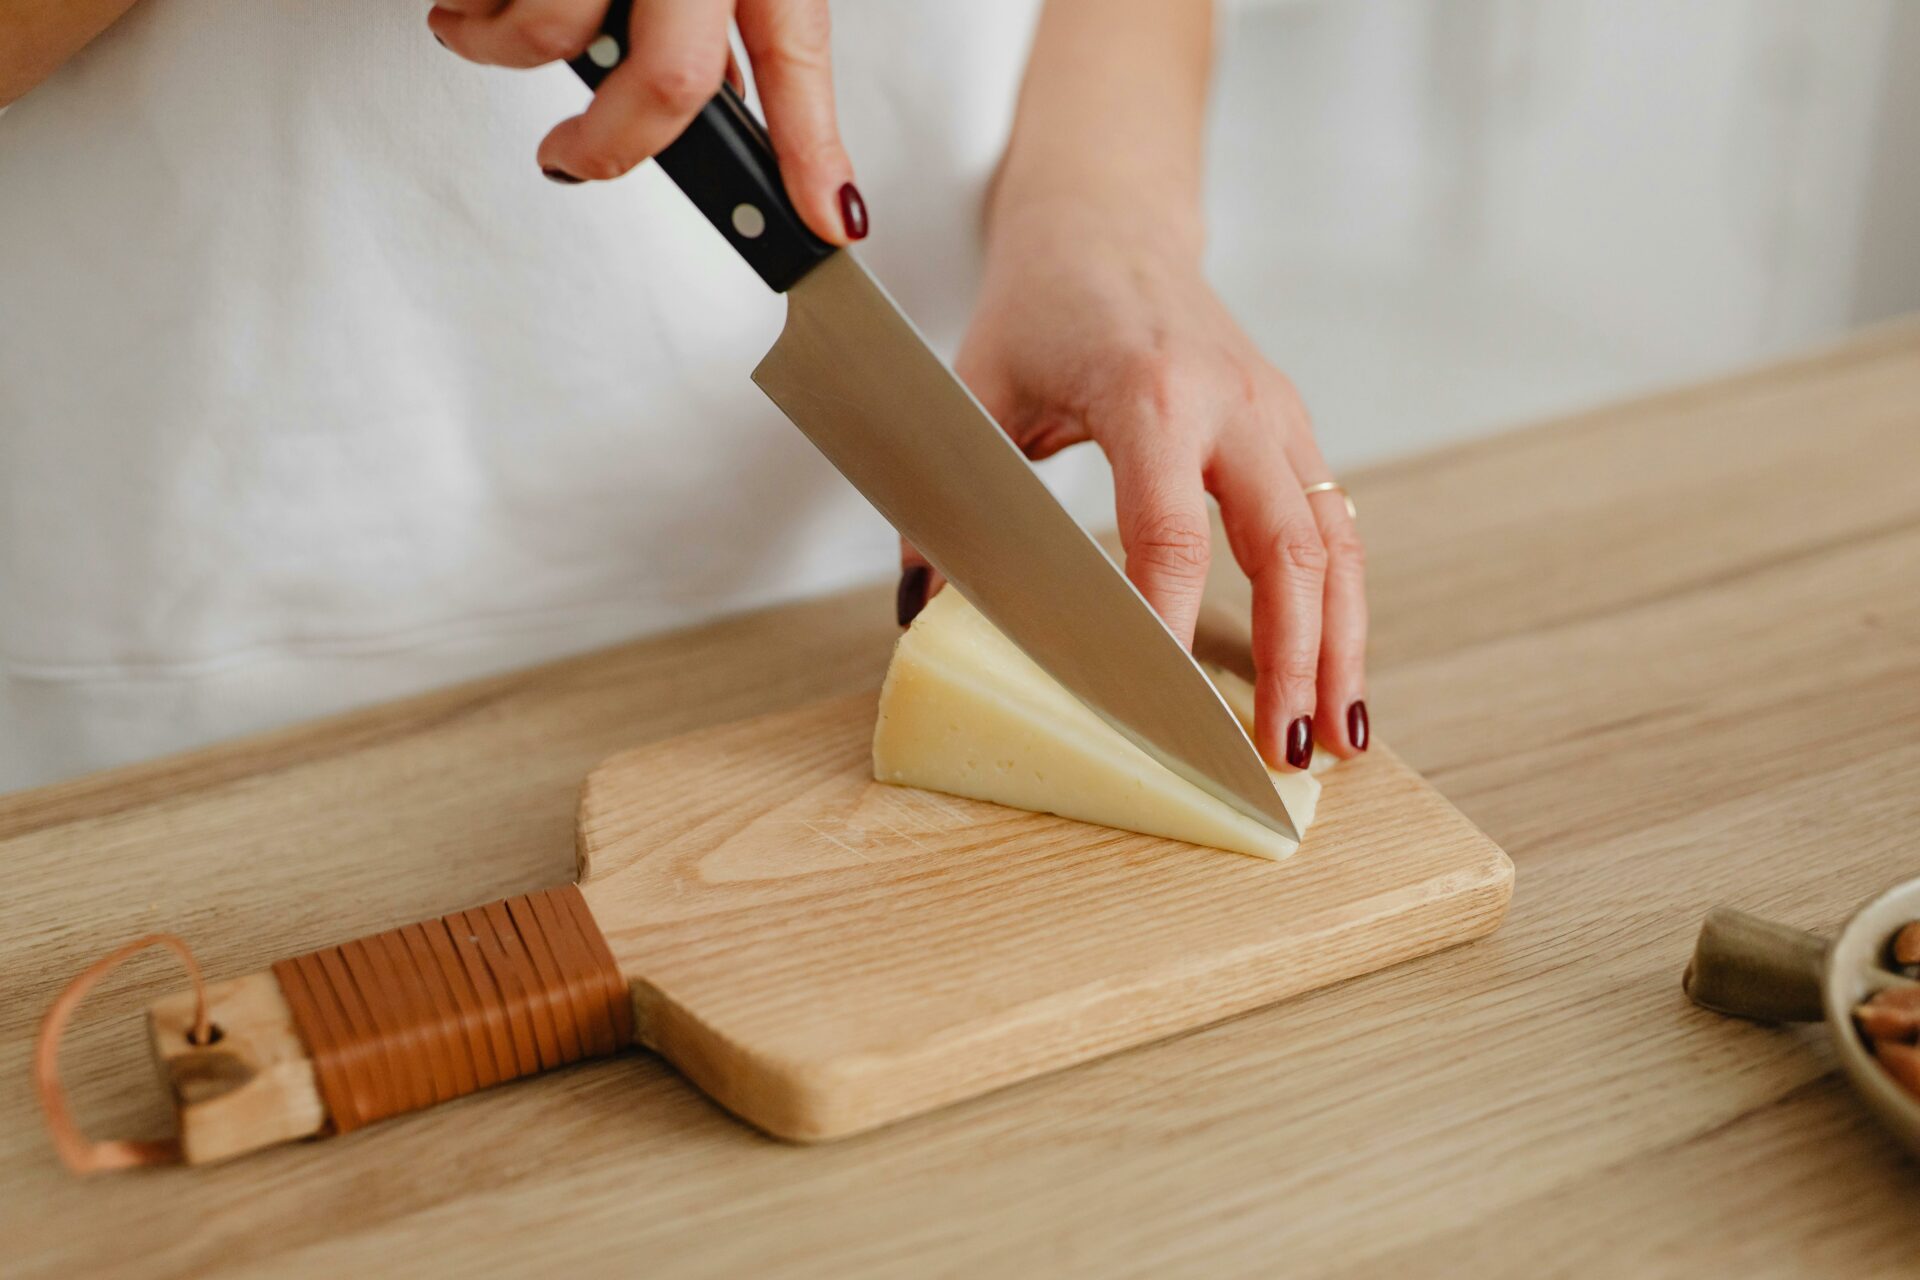 migliori coltelli per formaggio, coltello, tecniche di taglio del formaggio, mano che tiene un coltello per tagliare del formaggio, tagliere 